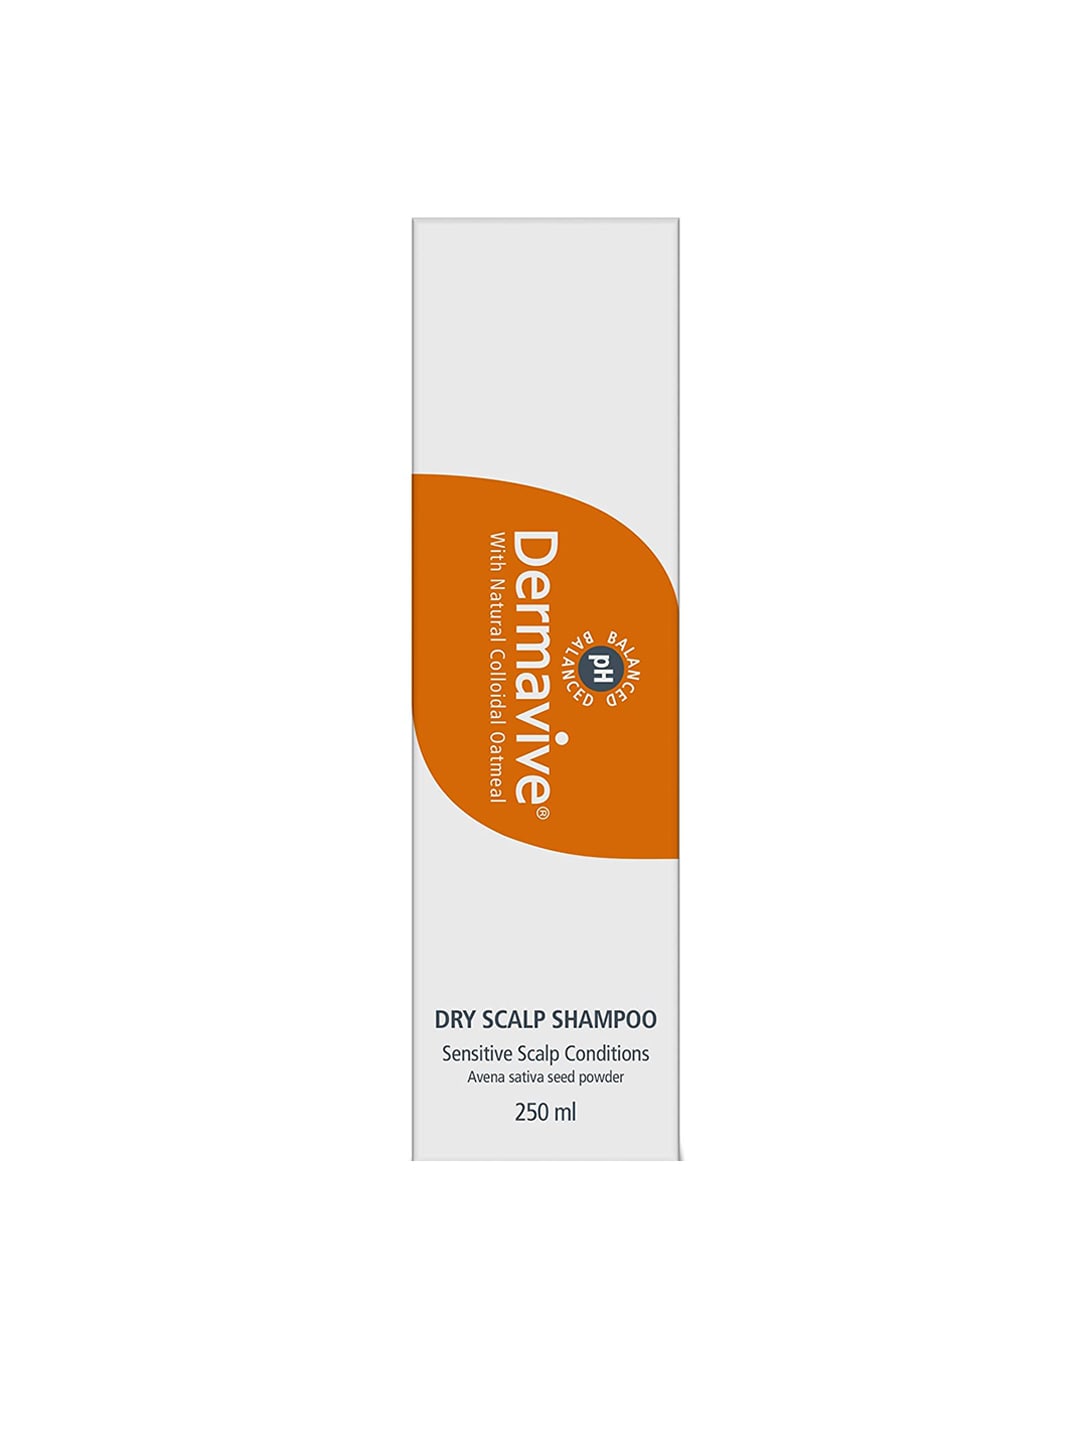 Dermavive Dry Scalp Shampoo - 250 ml Price in India